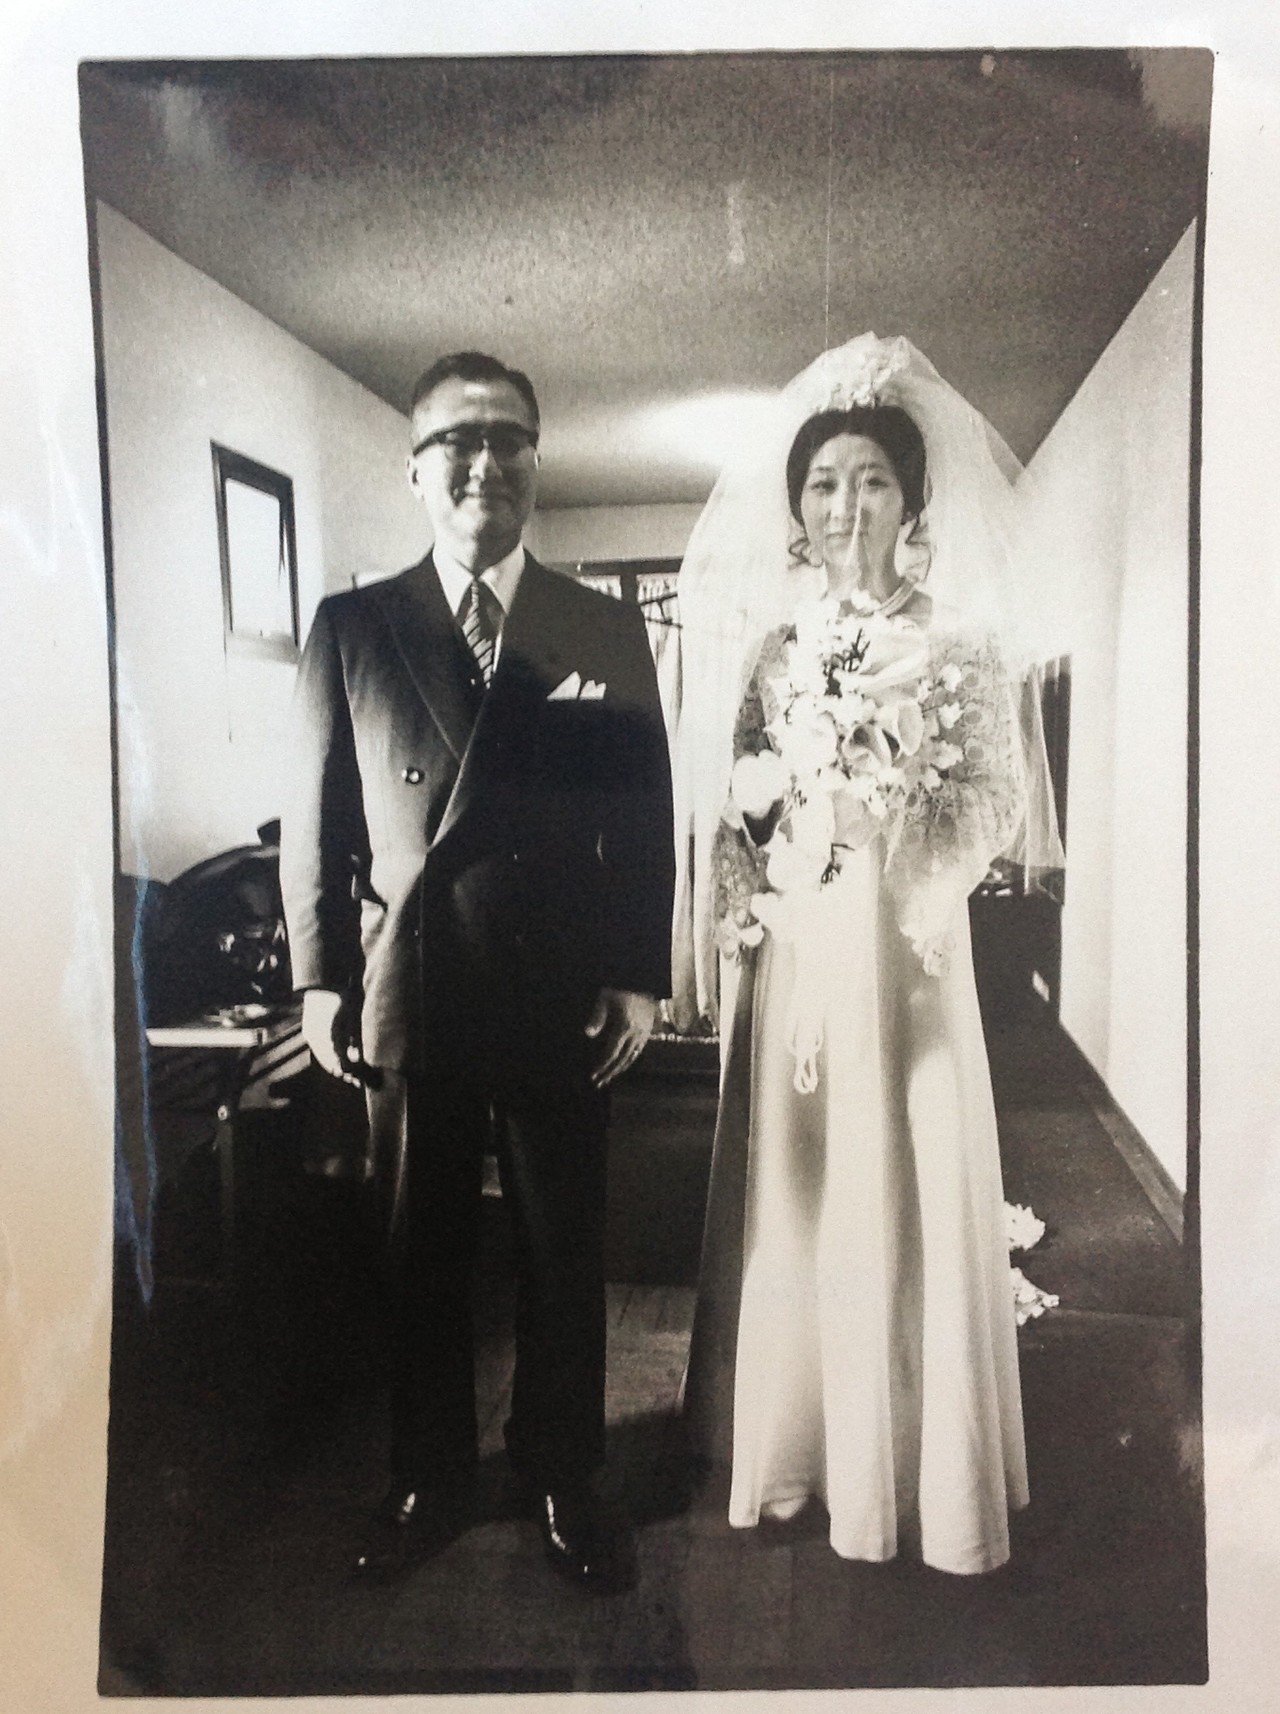 1971年12月14日 東京カテドラル 左は家人の父 50歳位であろうか で人並みに30人ぐらいのカメラマンがたくさん写真を撮ったが誰1人写真を送ってこなかった その2年 後にwienの私のところに友人 Tanakachotoku Note